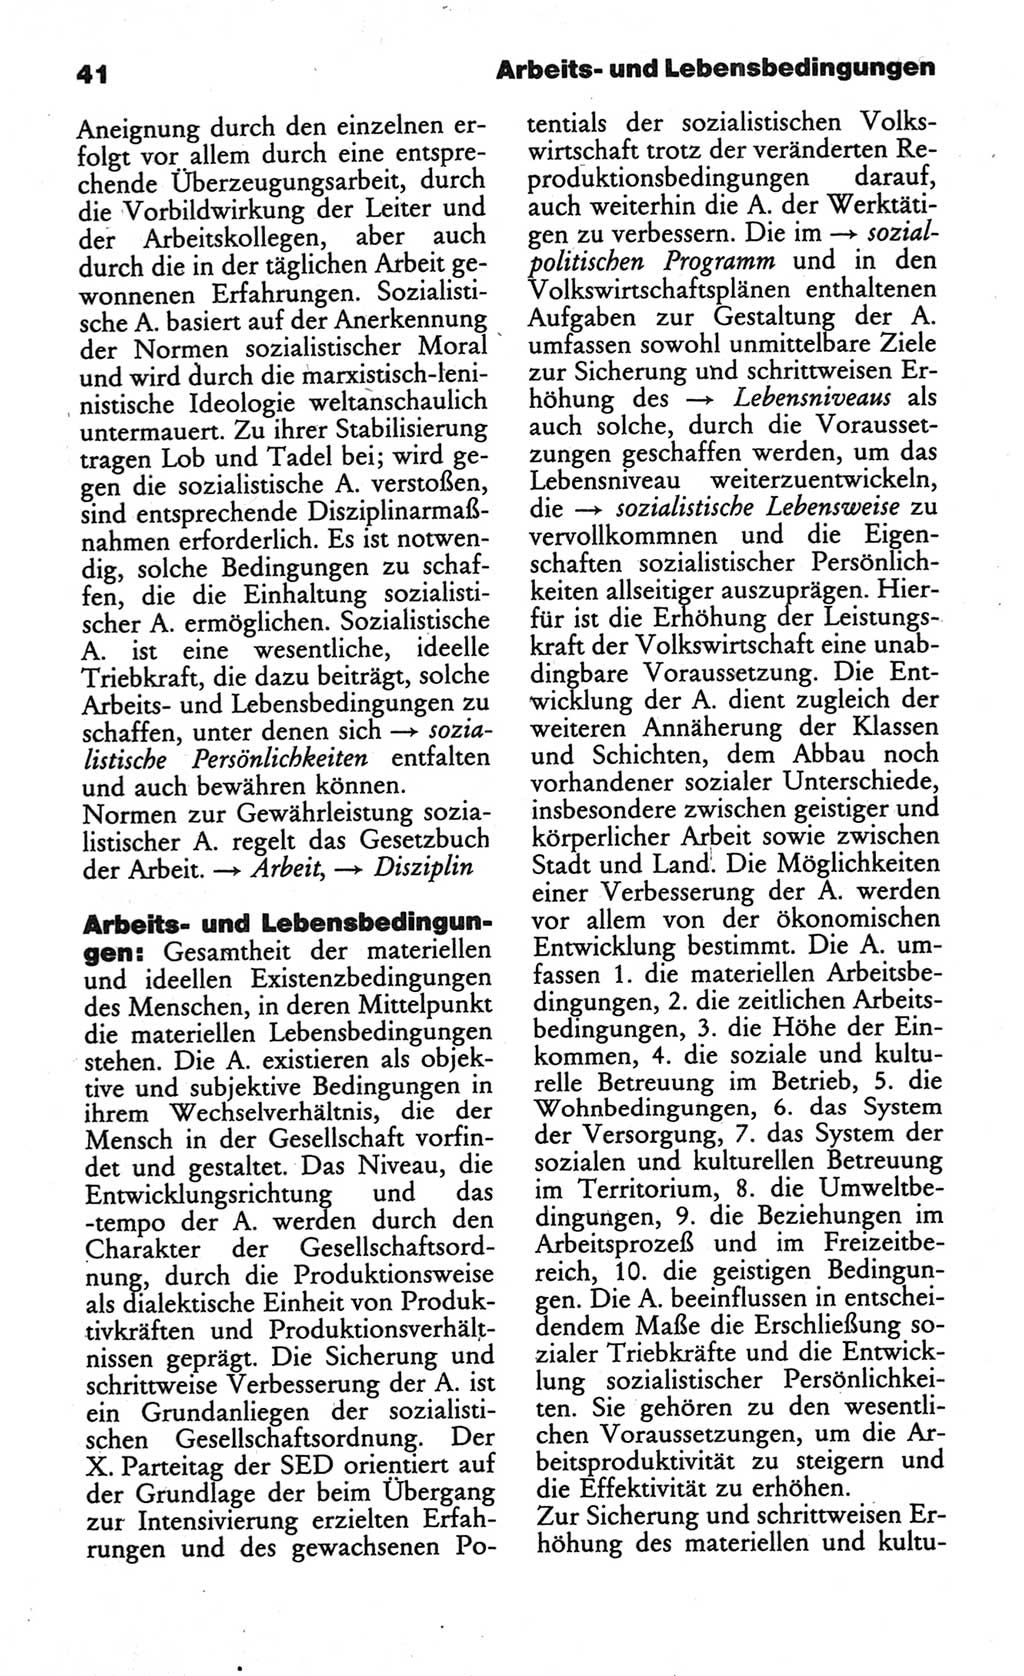 Wörterbuch des wissenschaftlichen Kommunismus [Deutsche Demokratische Republik (DDR)] 1984, Seite 41 (Wb. wiss. Komm. DDR 1984, S. 41)